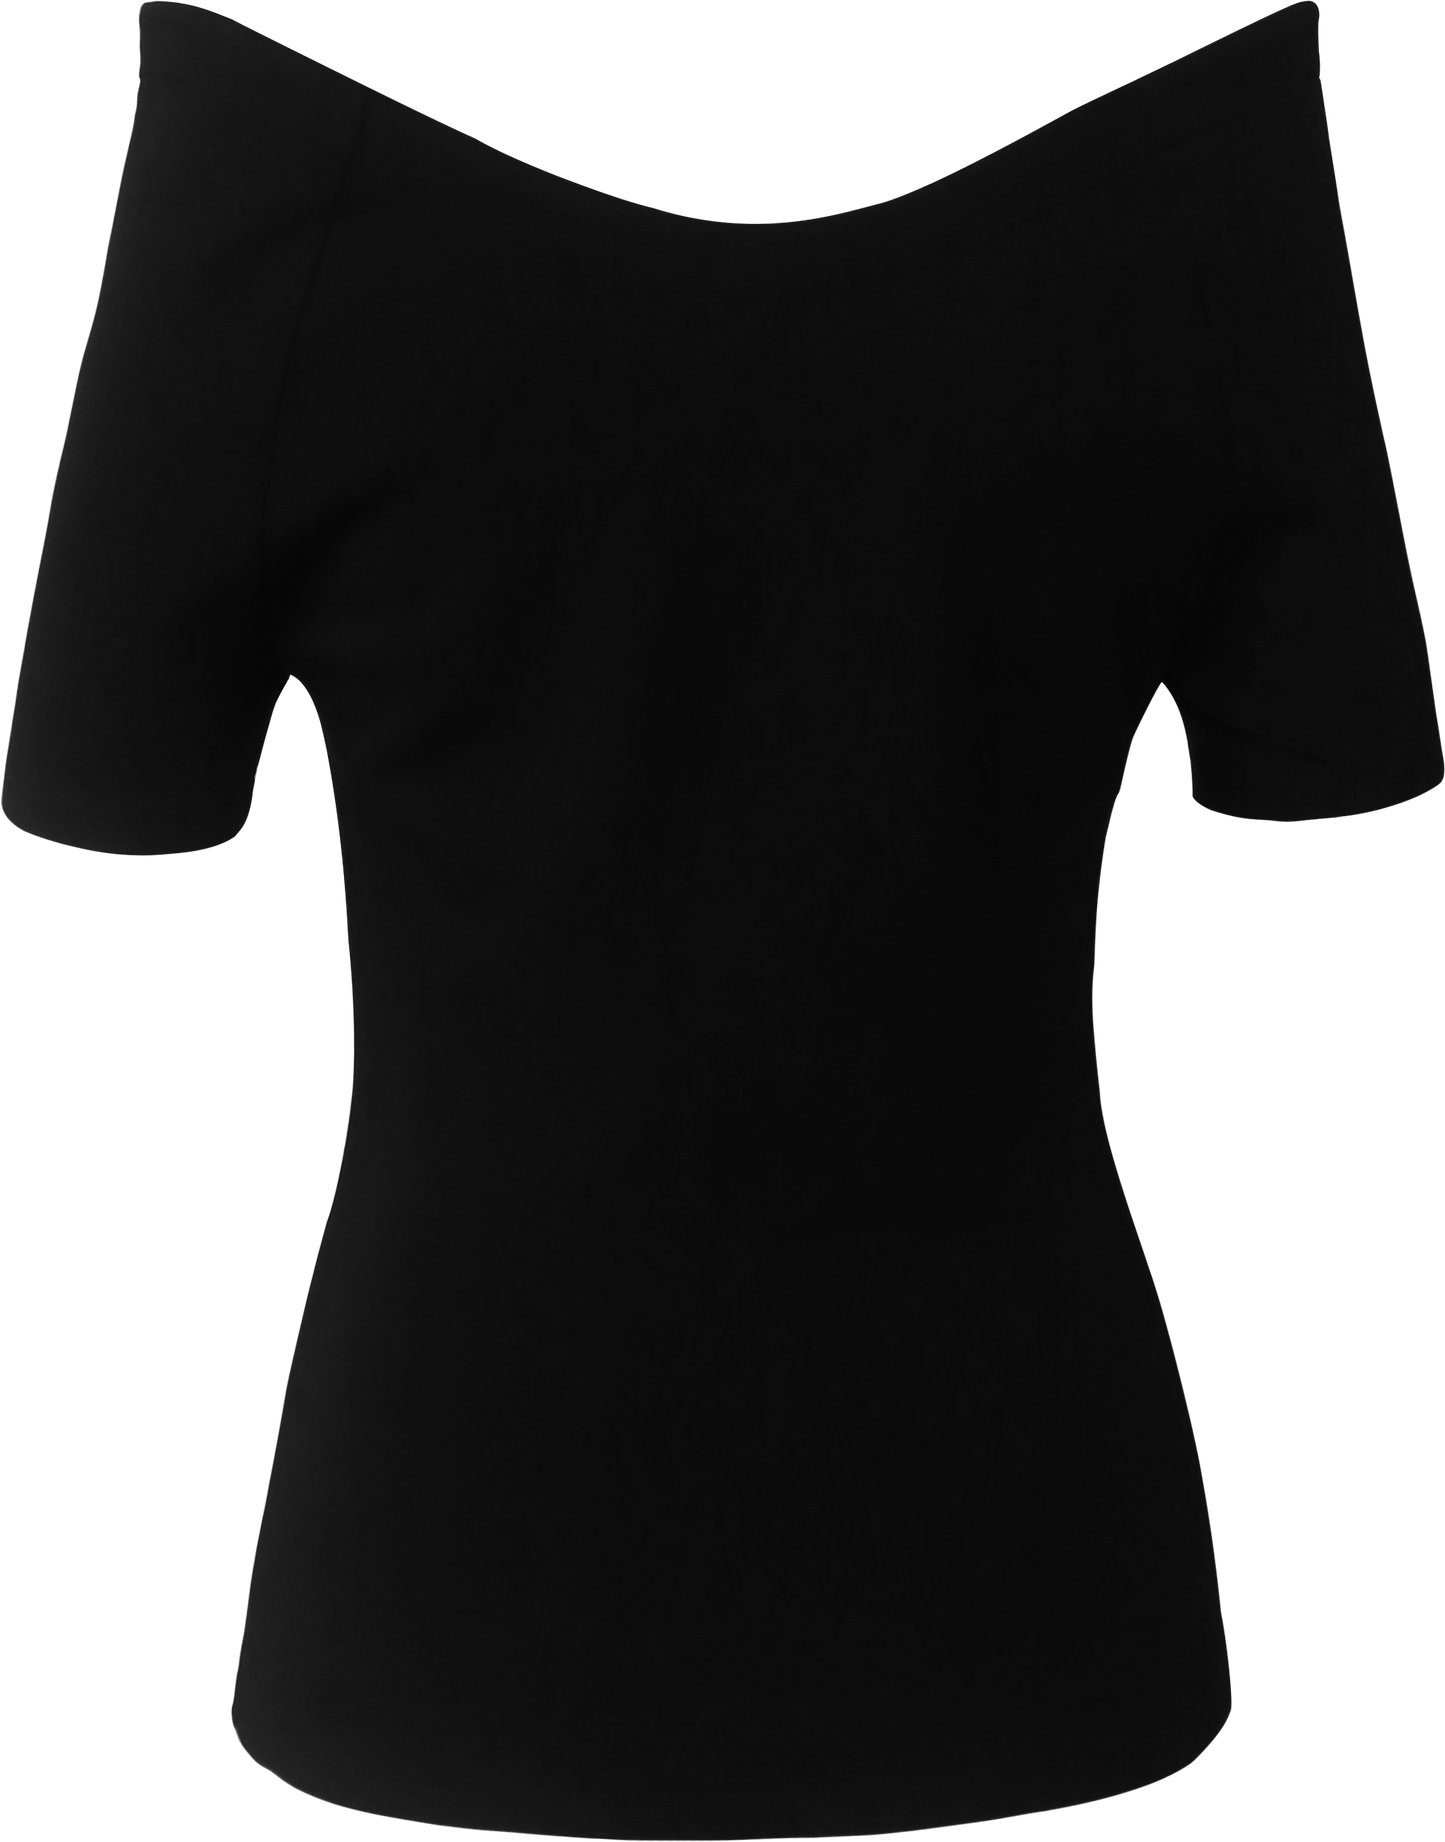 One-Shoulder Short Sleeve Top